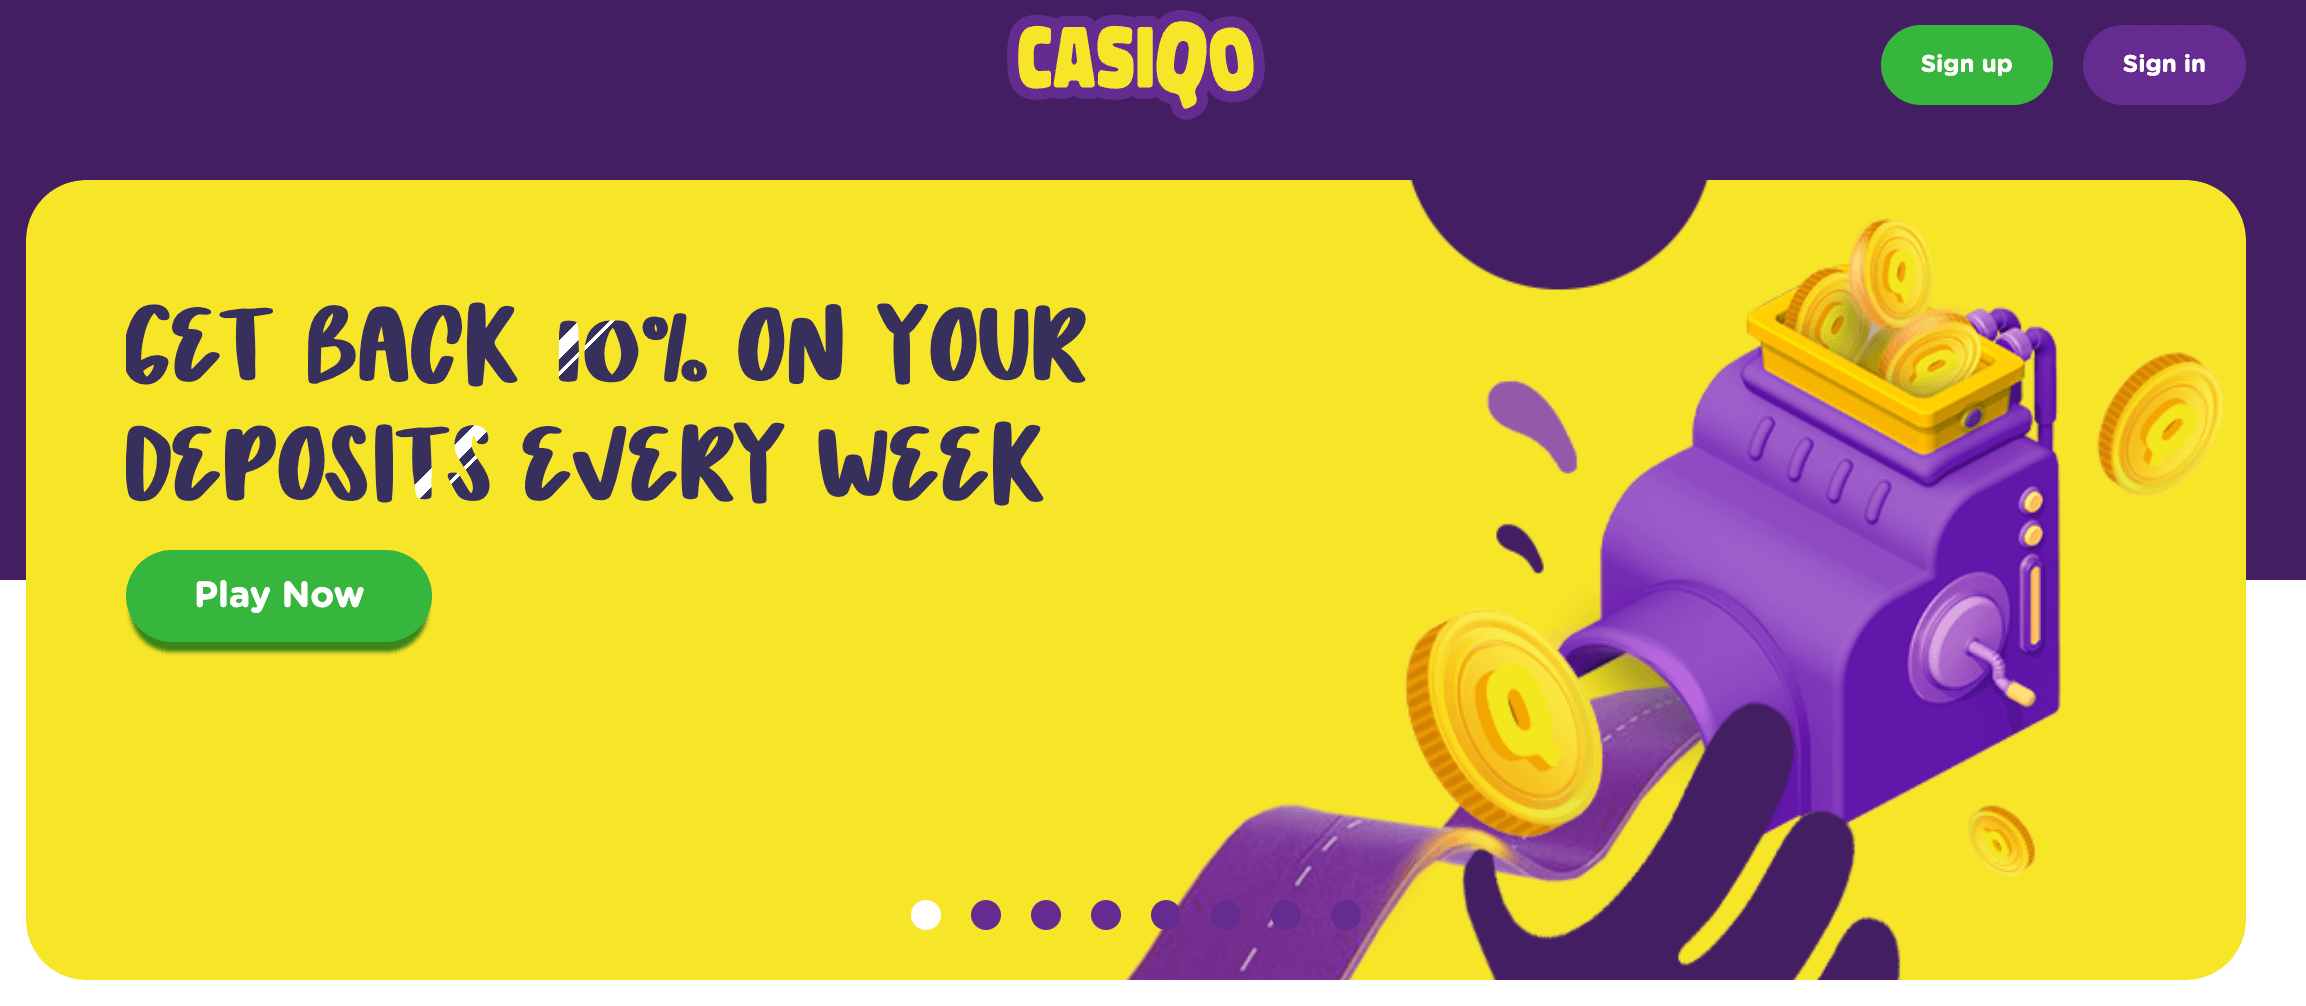 casiqo-casino-bonuses-canada